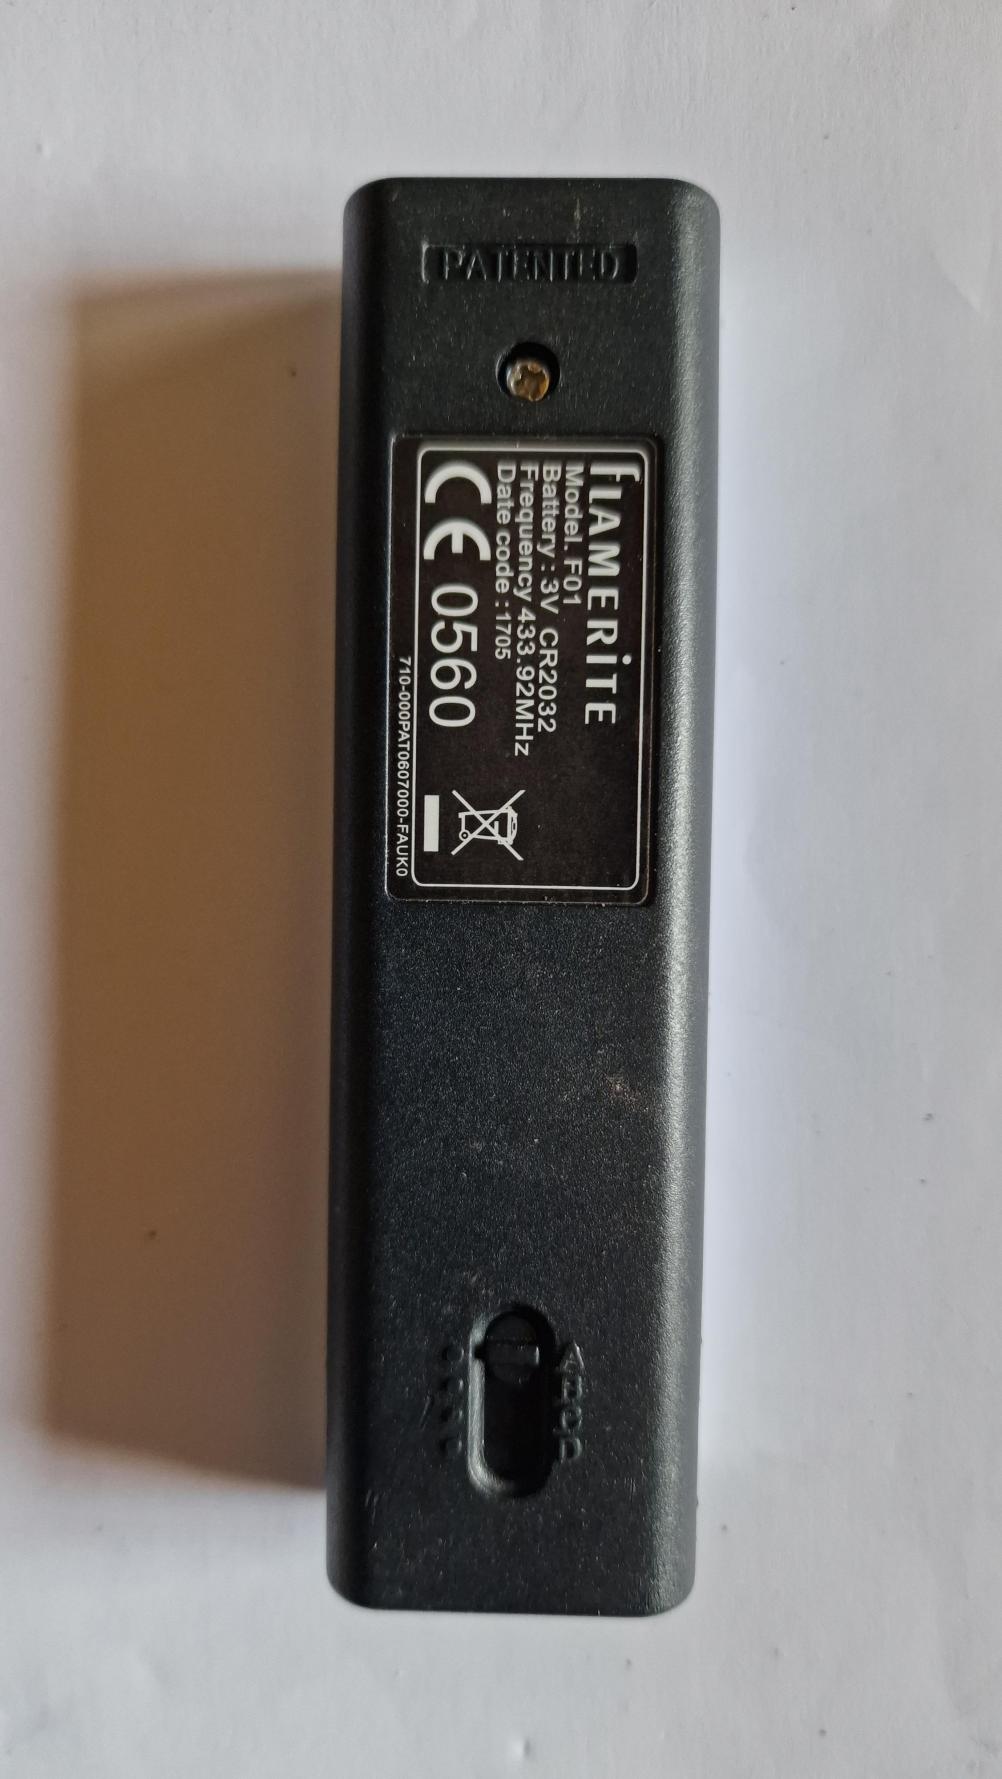 Flamerite   Remote Control - Back Image